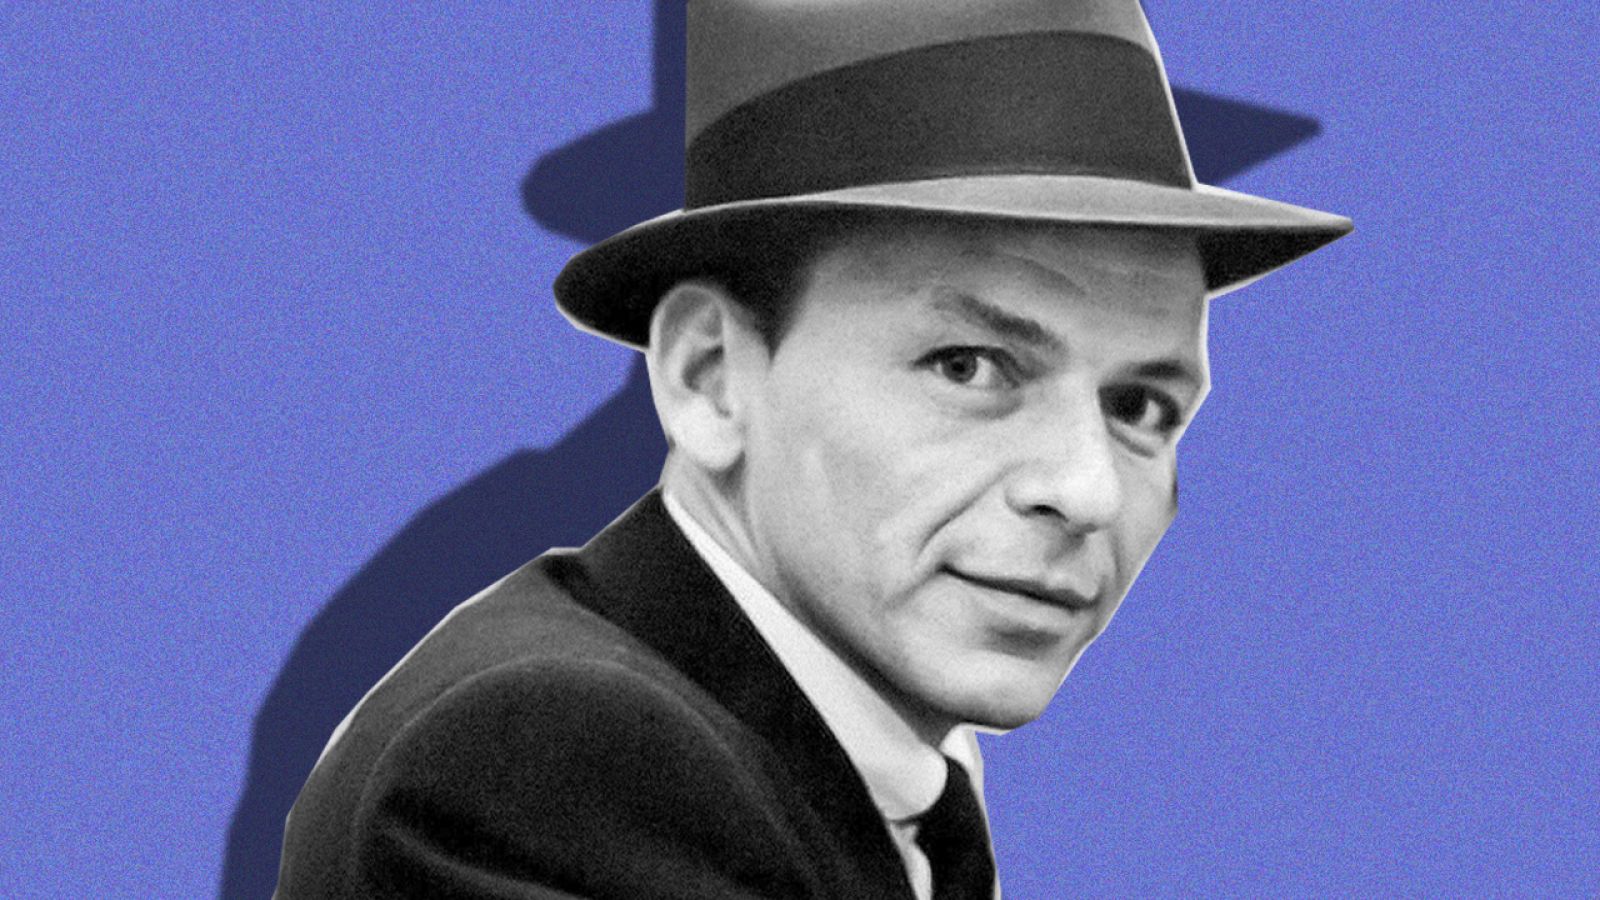 La vida de Frank Sinatra en 'Documaster'